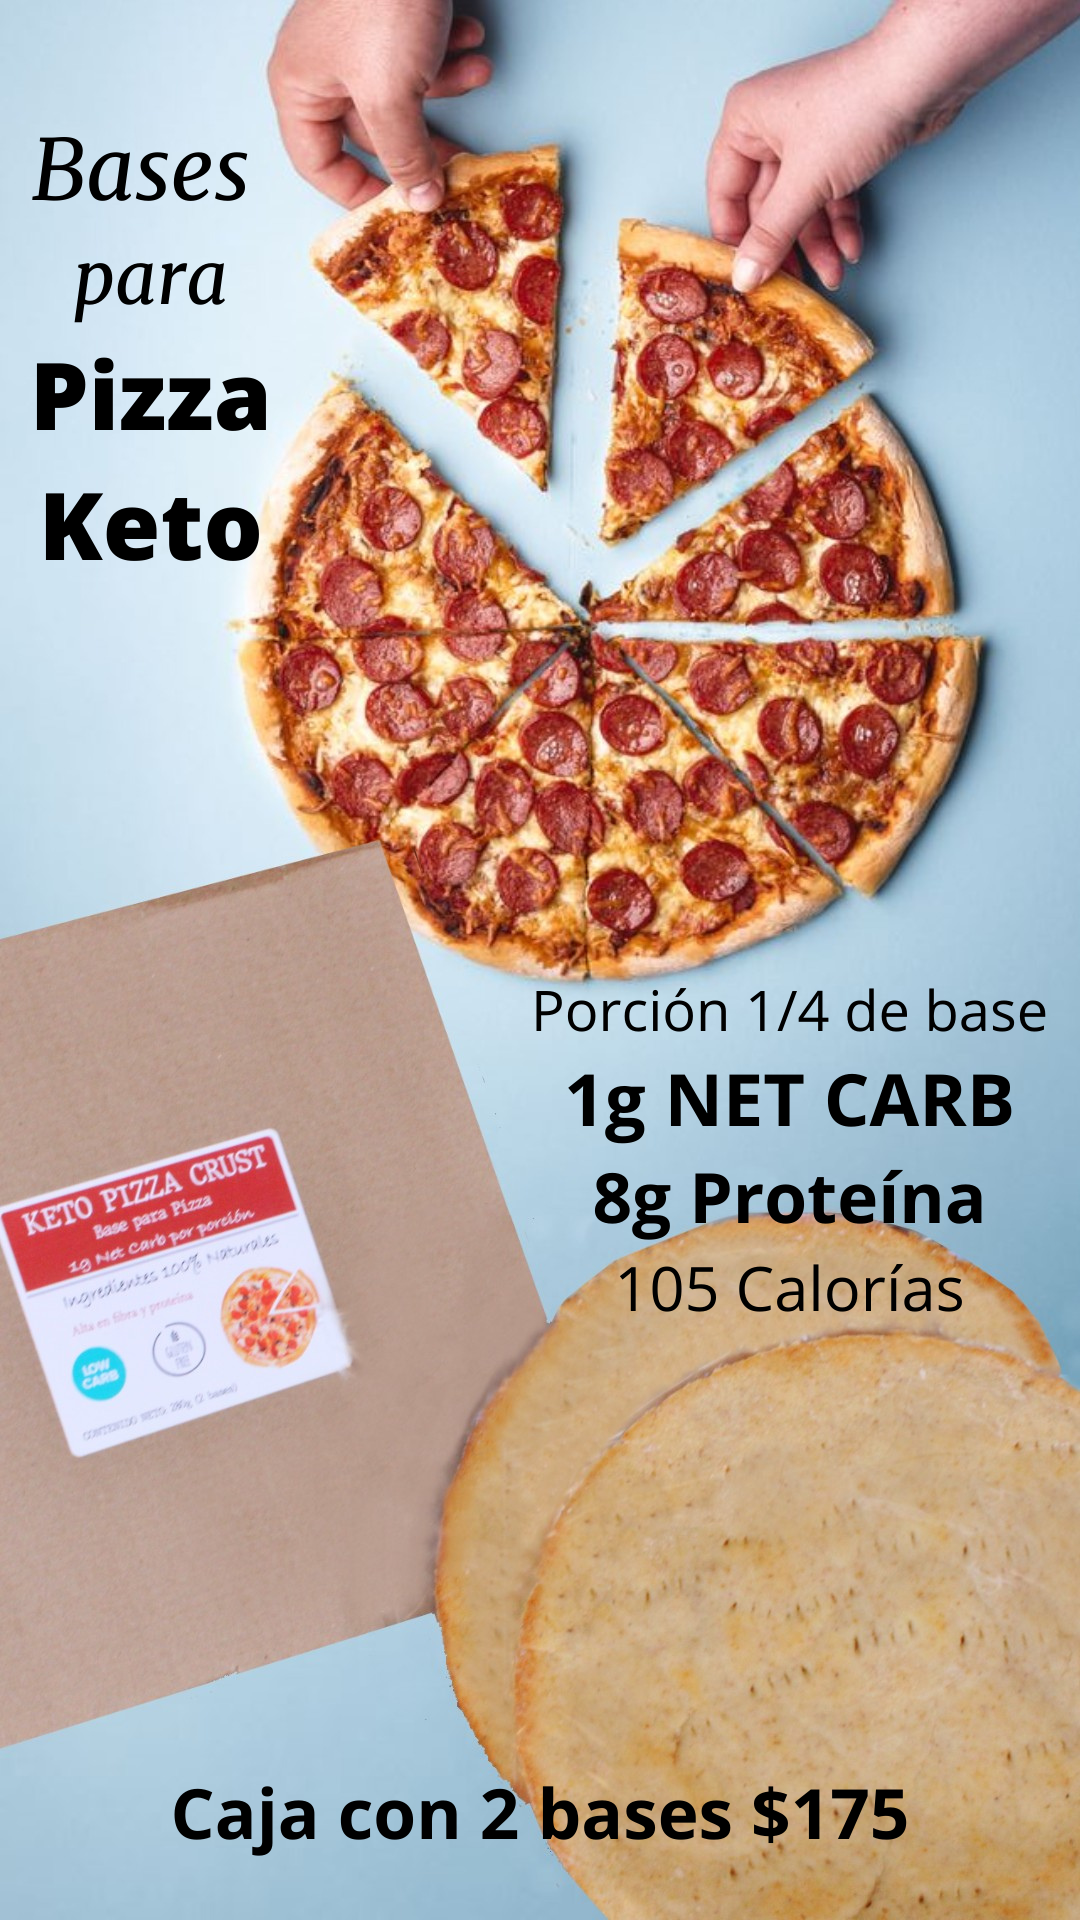 Bases para Pizza Keto (Sólo envíos express REQUIEREN REFRIGERACIÓN)